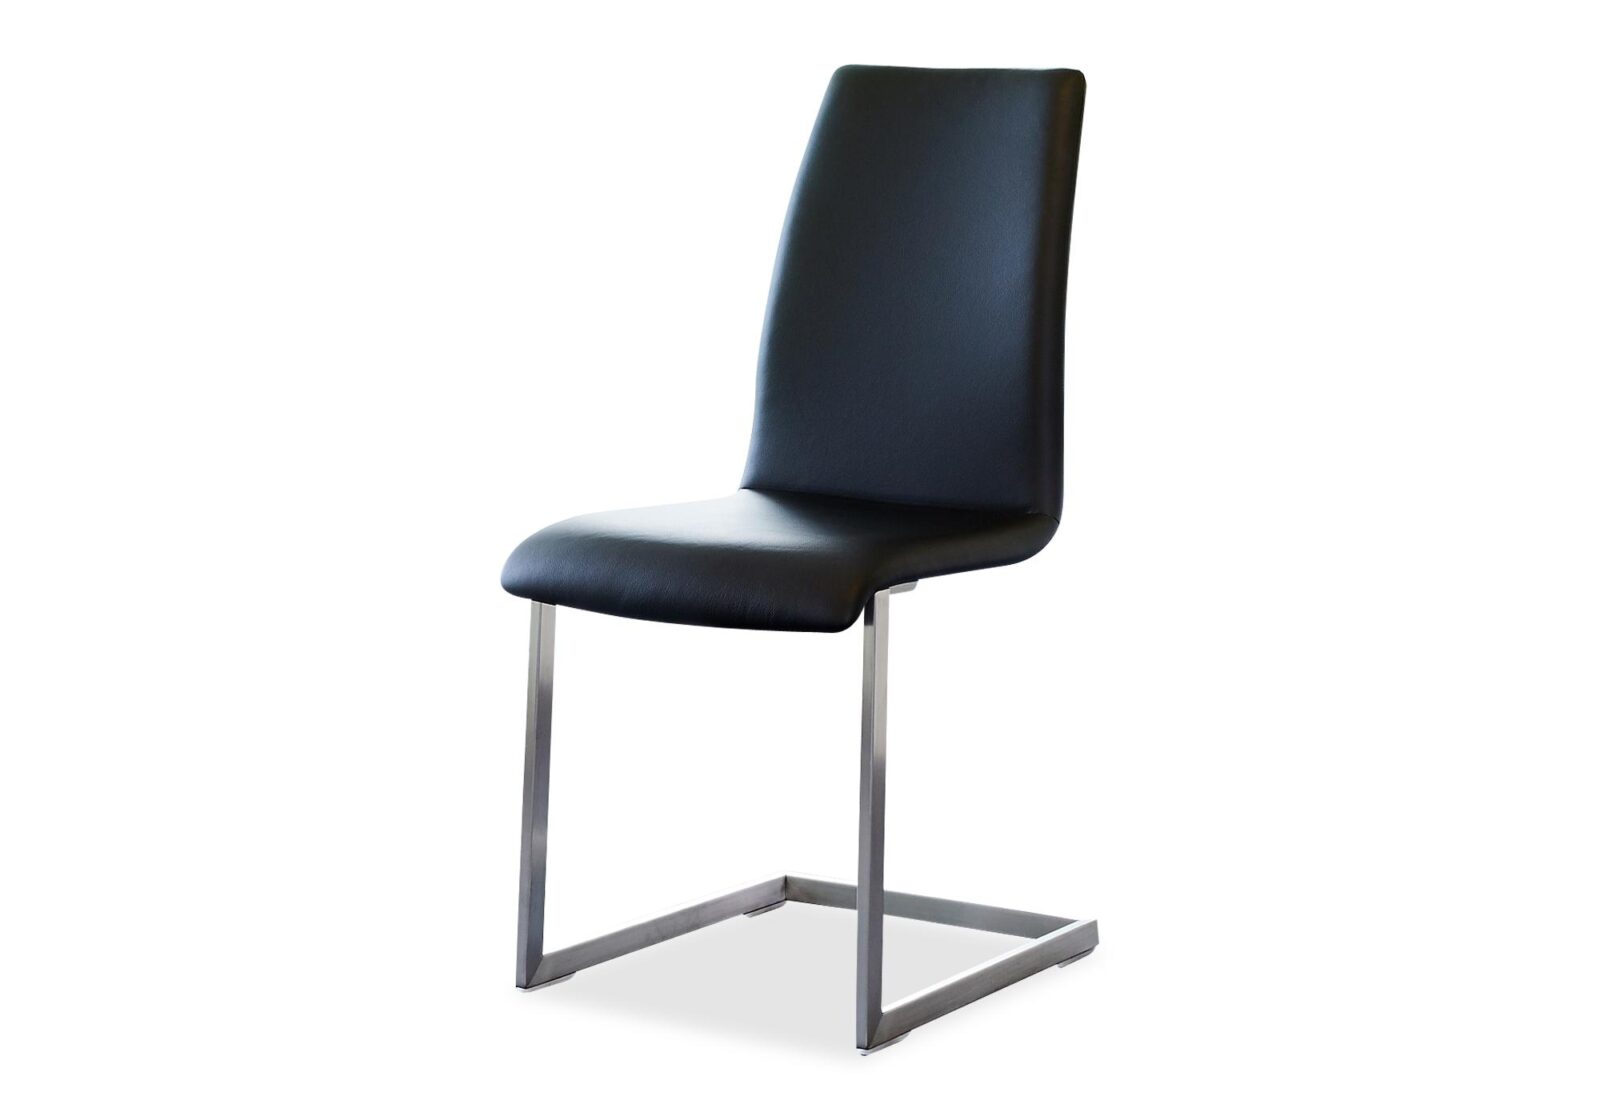 Freischwinger Stuhl Lina aus Leder. Bezug: Leder. Farbe: Schwarz. Erhältlich bei Möbel Gallati.